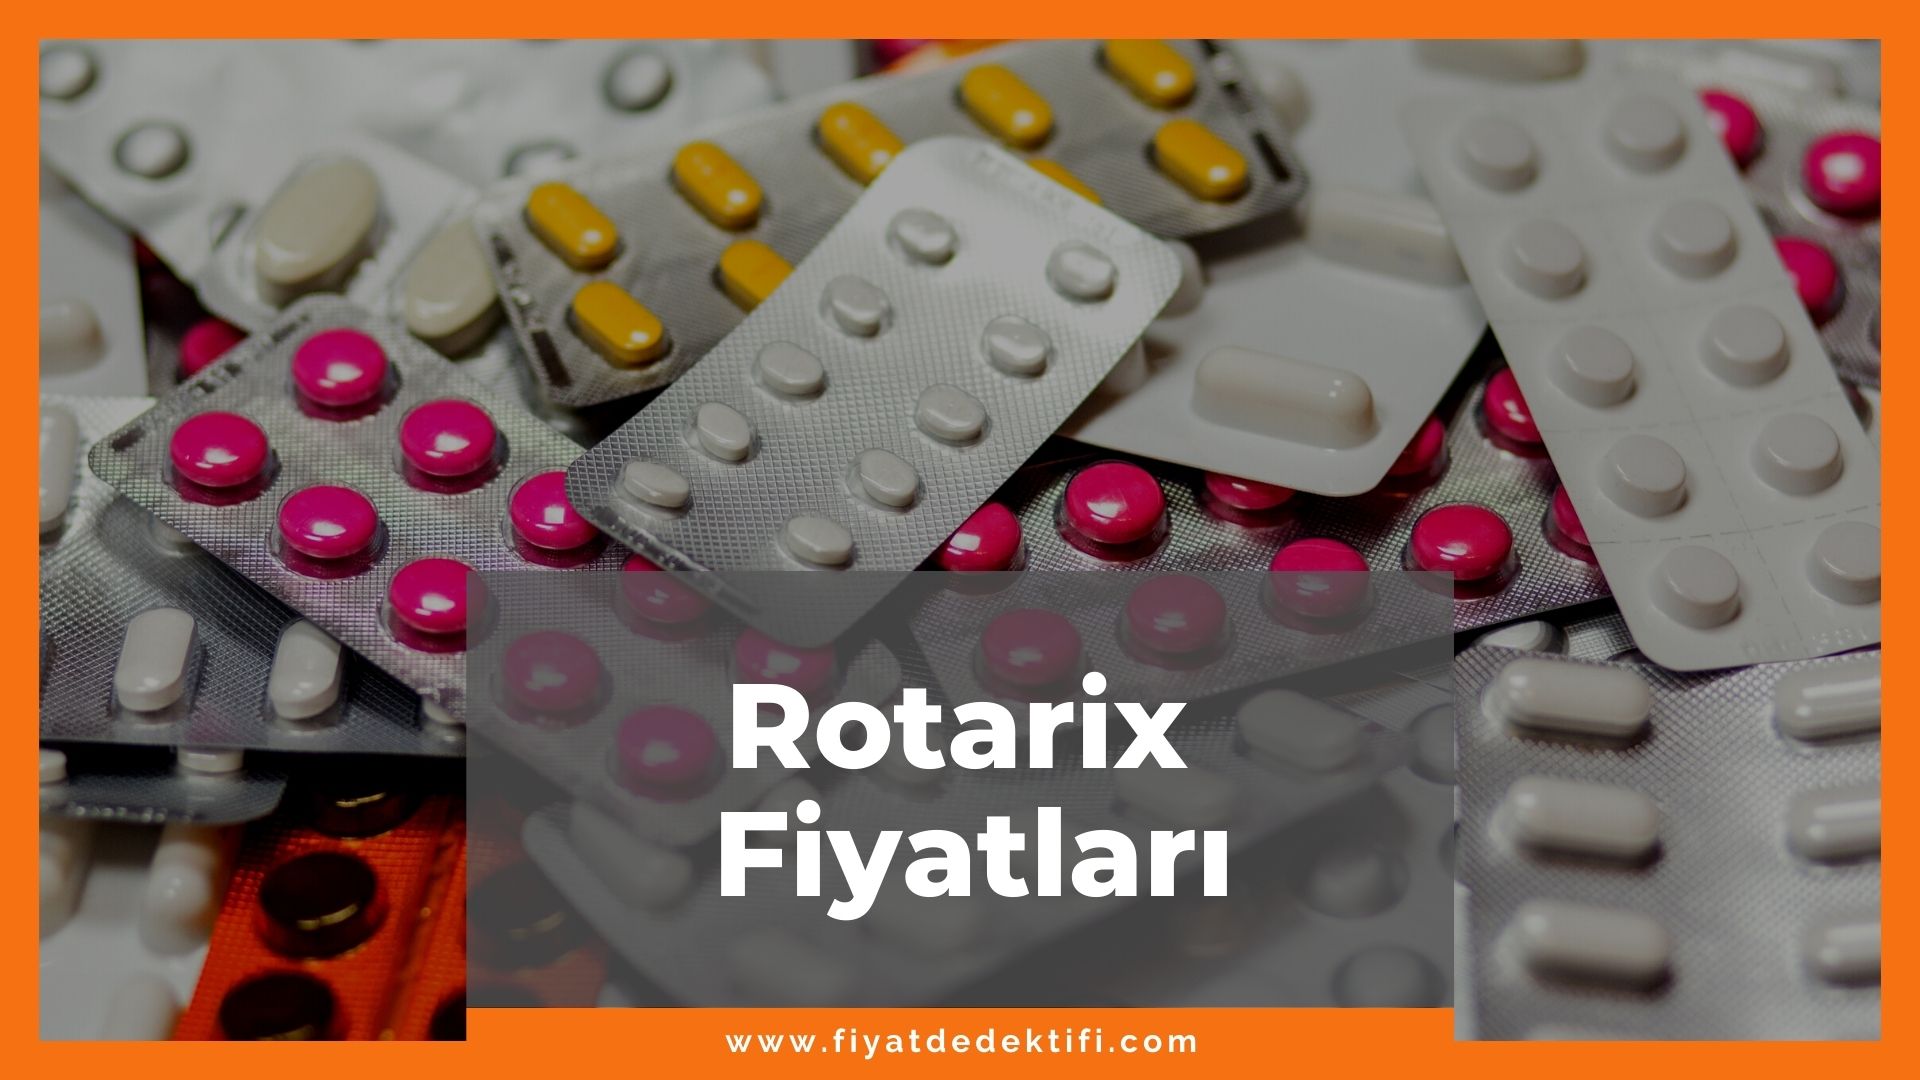 Rotarix Fiyat 2021, Rotarix Fiyatı, rotarix nedir ne işe yarar, rotarix zamlandı mı, rotarix zamlı fiyat ne kadar olduRotarix Fiyat 2021, Rotarix Fiyatı, rotarix nedir ne işe yarar, rotarix zamlandı mı, rotarix zamlı fiyat ne kadar oldu